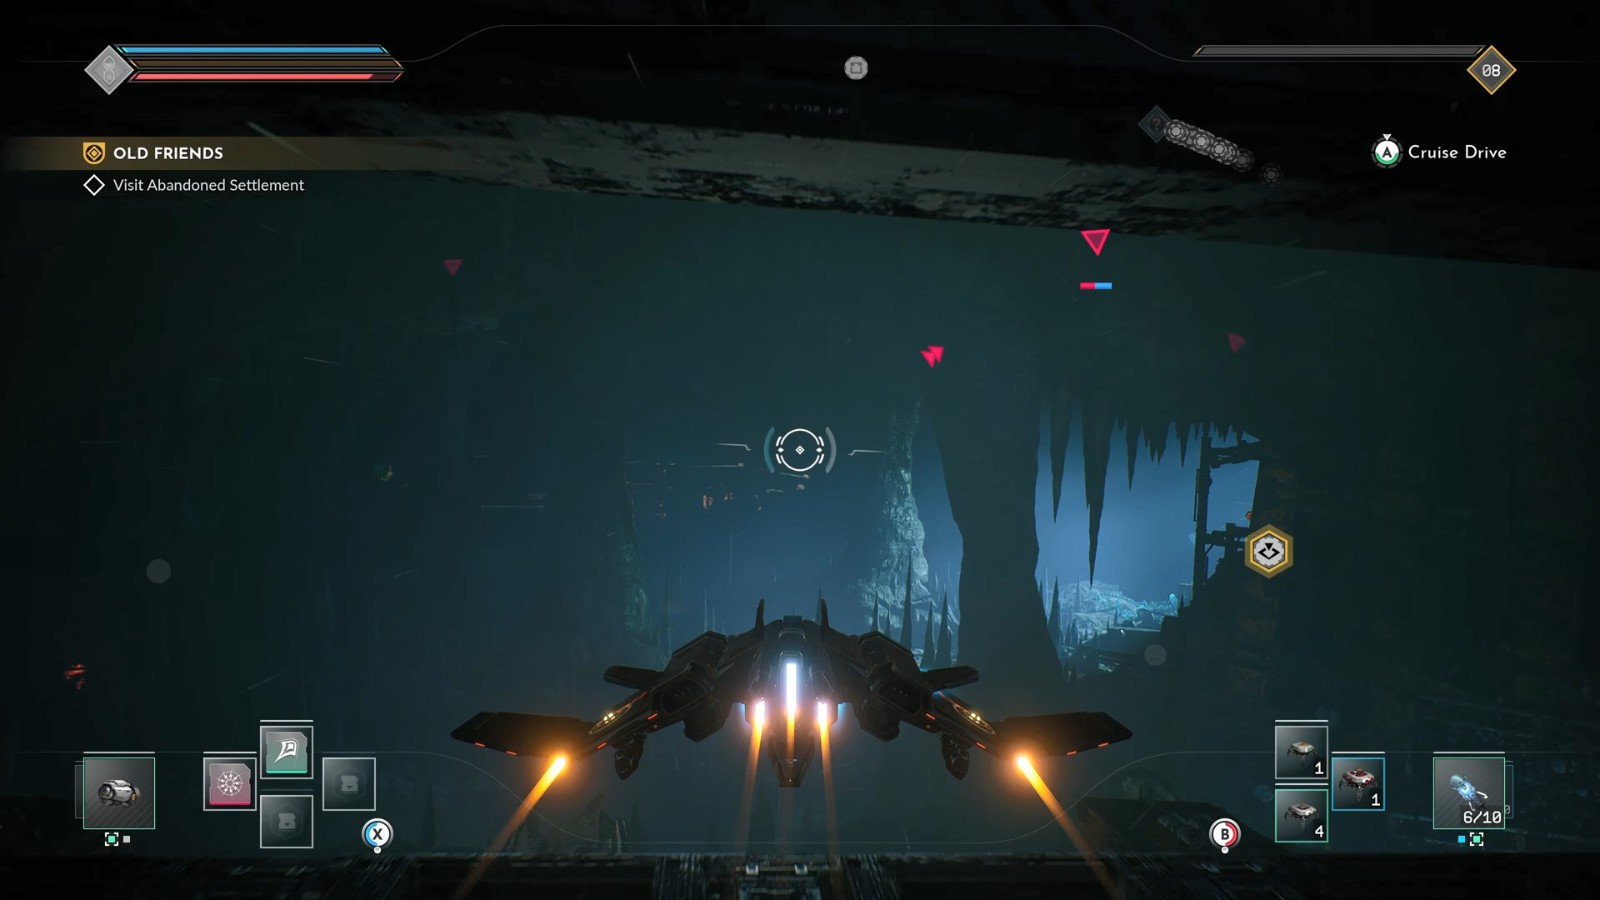 太空射击游戏《永恒空间2》宣布8月15日登陆主机平台 支持60帧